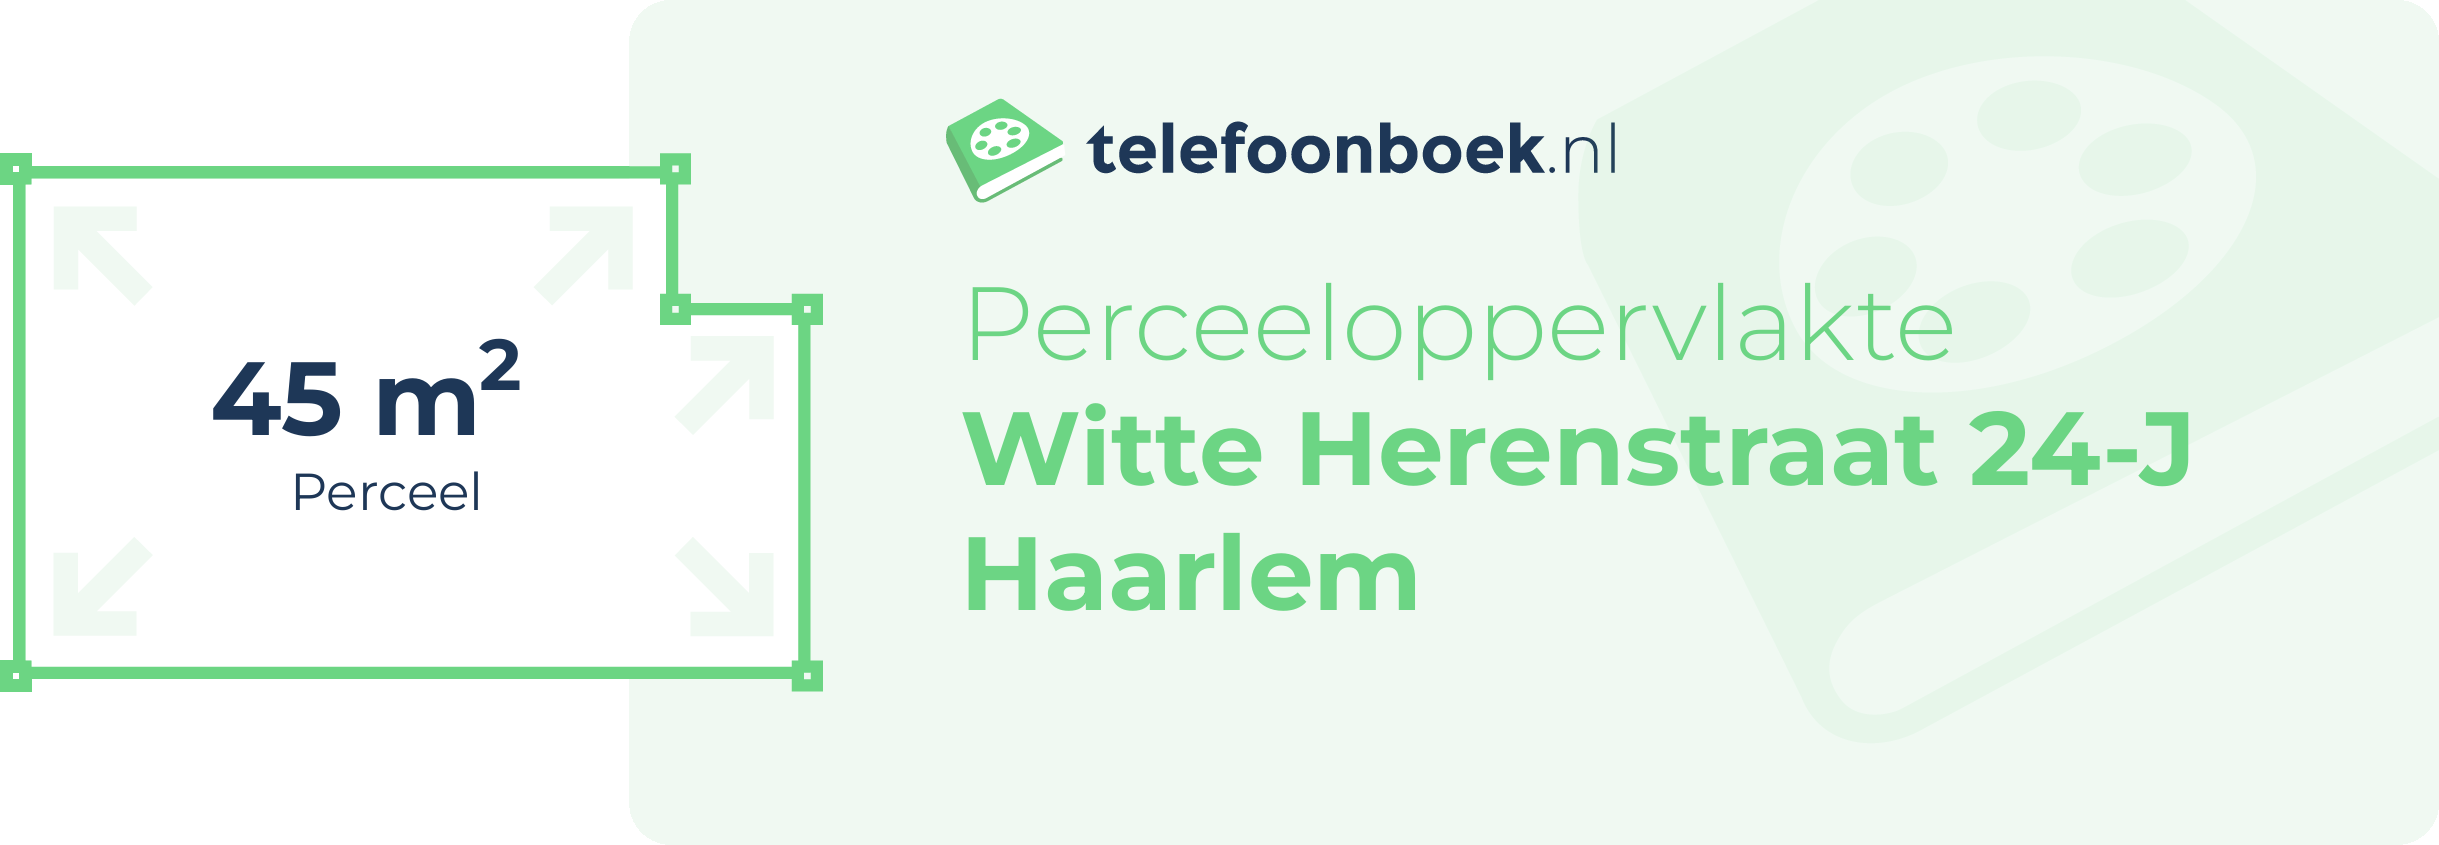 Perceeloppervlakte Witte Herenstraat 24-J Haarlem